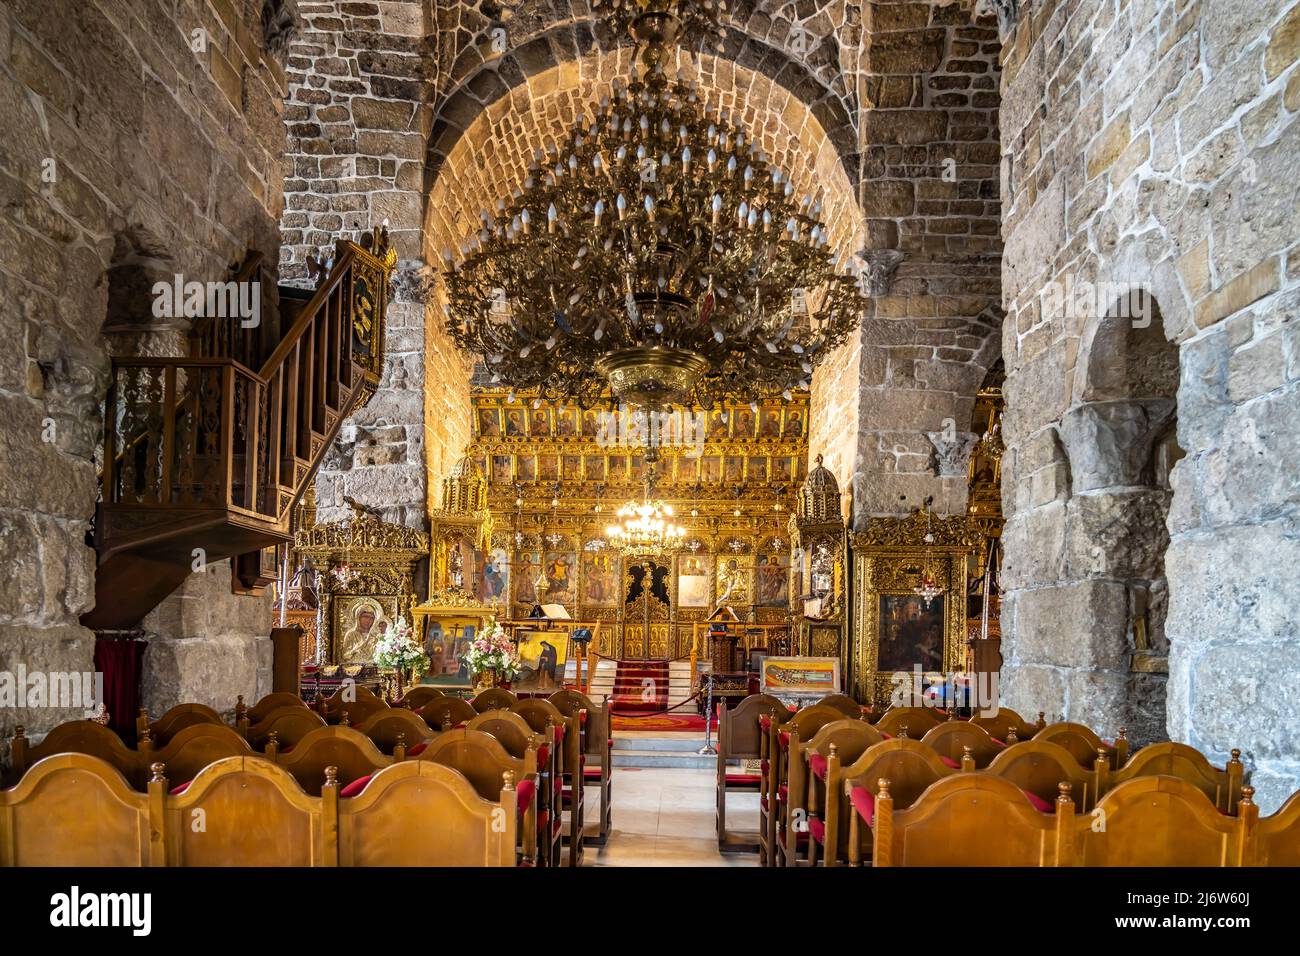 Innenraum der Agios Lazaros Kirche in Larnaka, Zypern, Europa | Eglise de Saint Lazarus intérieur, Larnaca, Chypre, Europe Banque D'Images